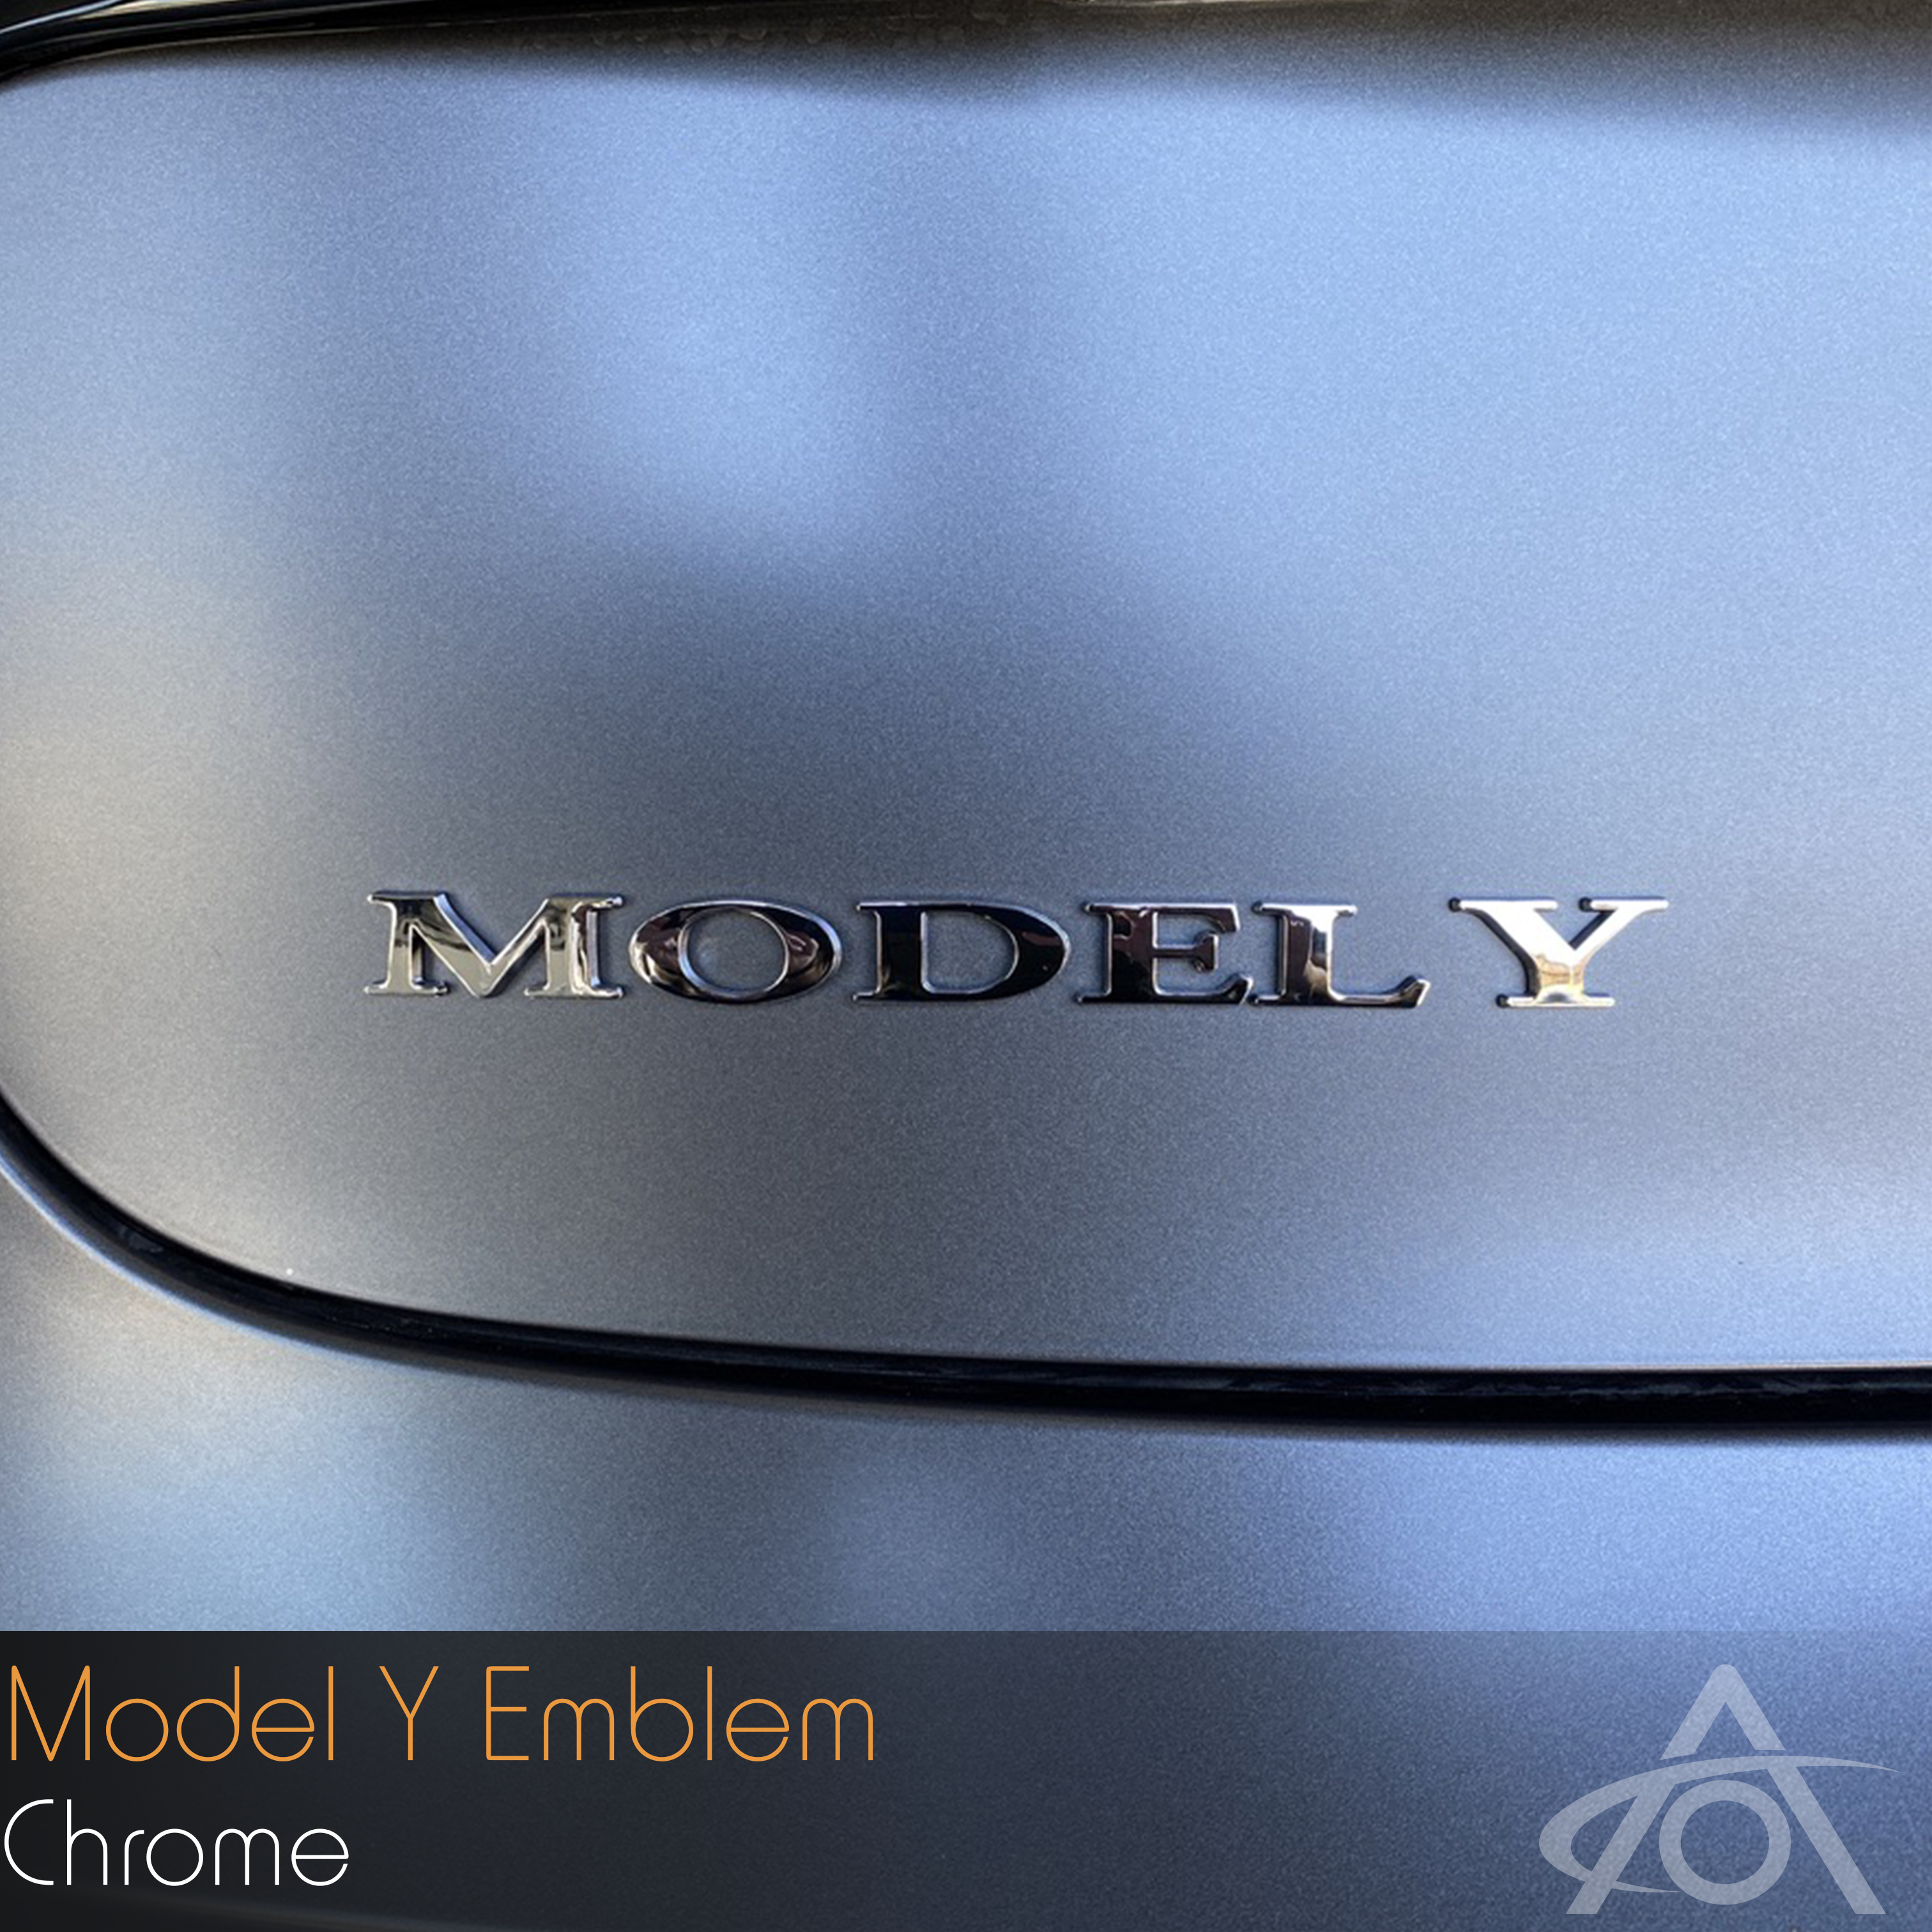 Model Y Emblem